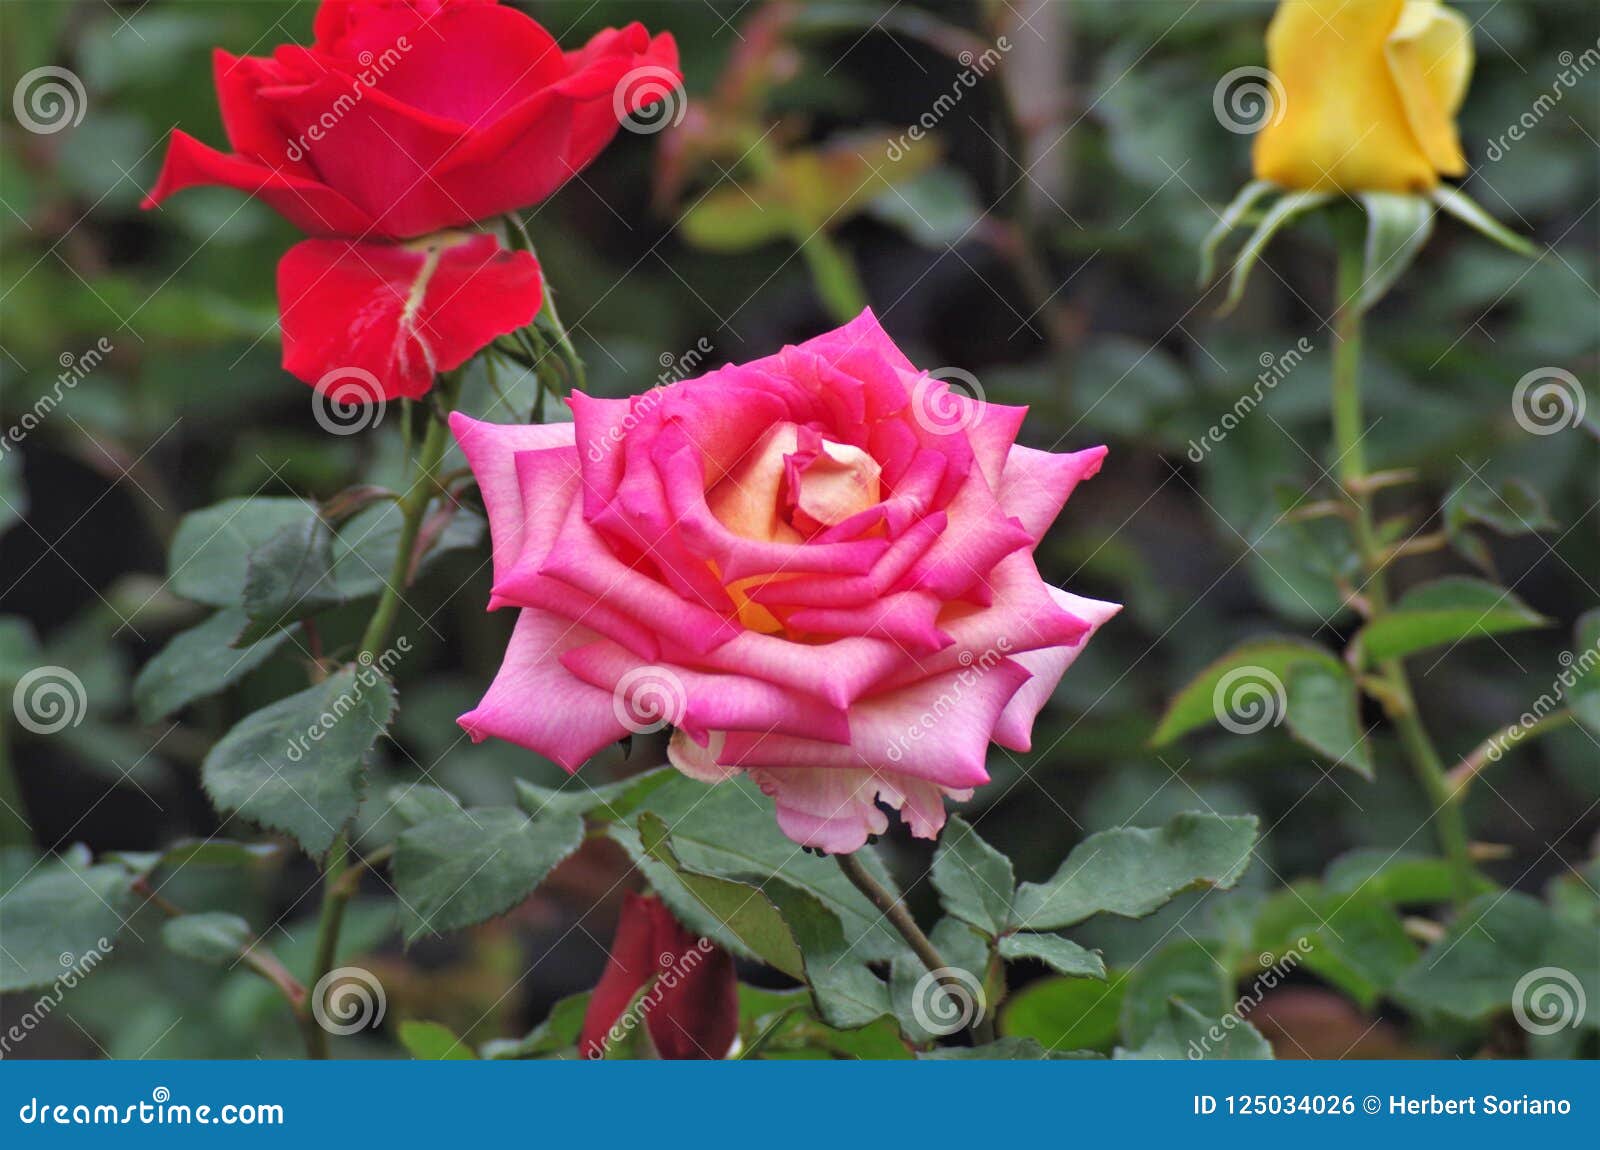 pink exotic rose flower closeup on a honduras national park la ceiba cuero y salado